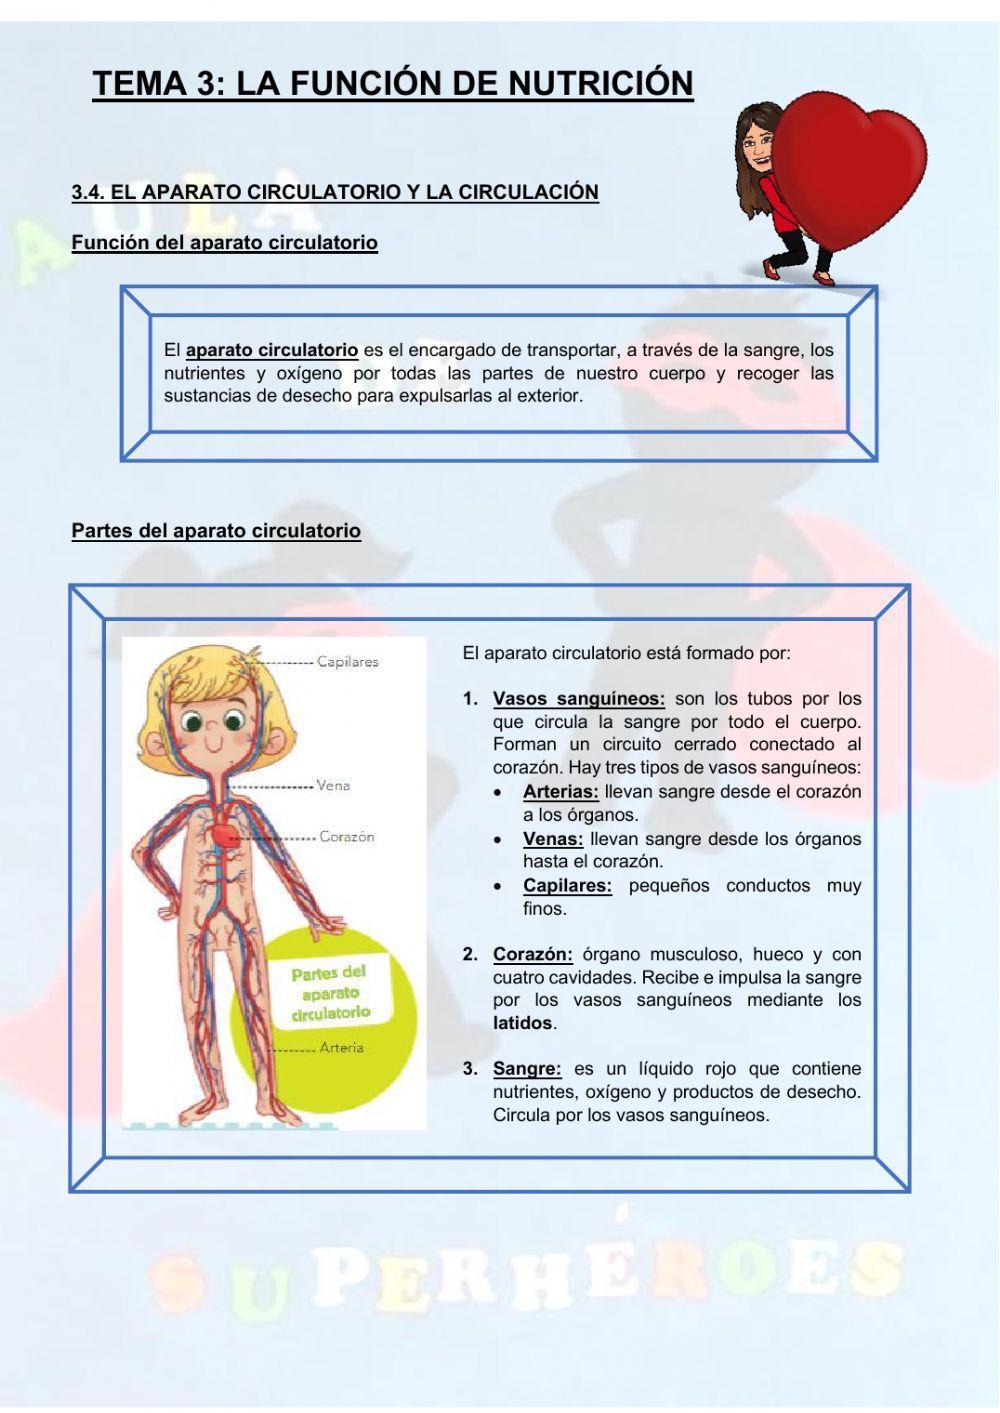 El aparato circulatorio y la circulación